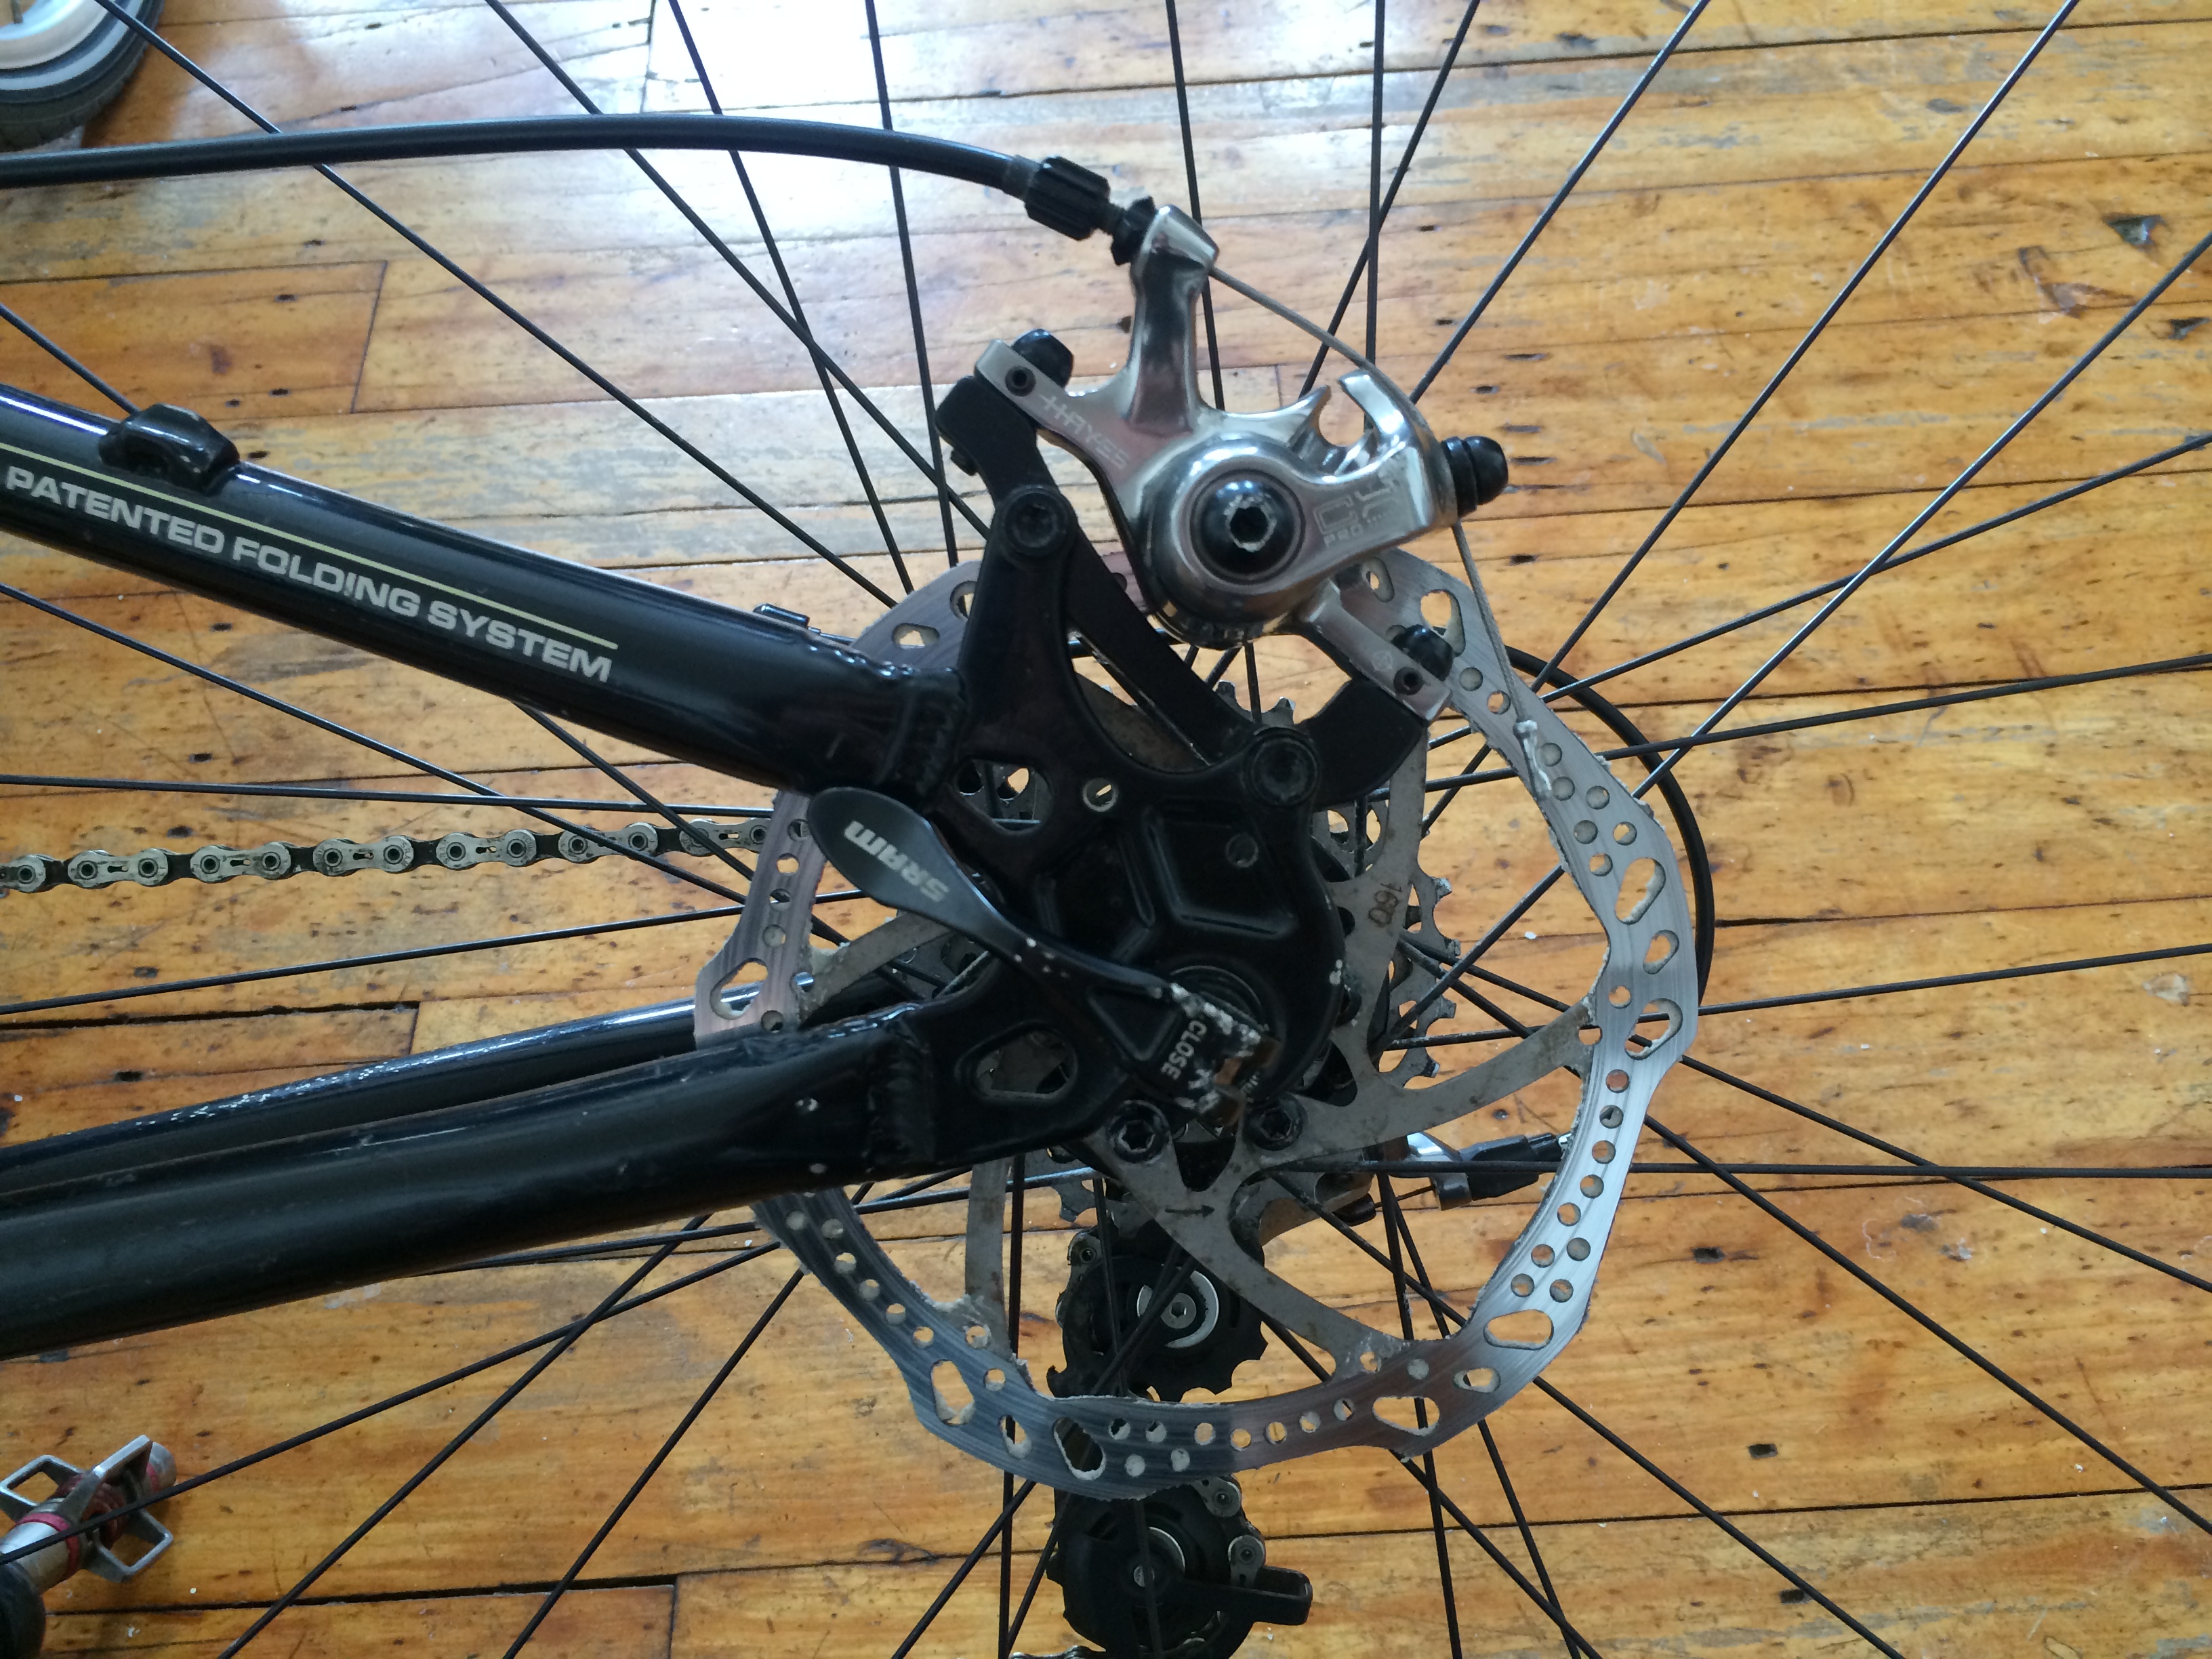 disc brakes bike squeaking